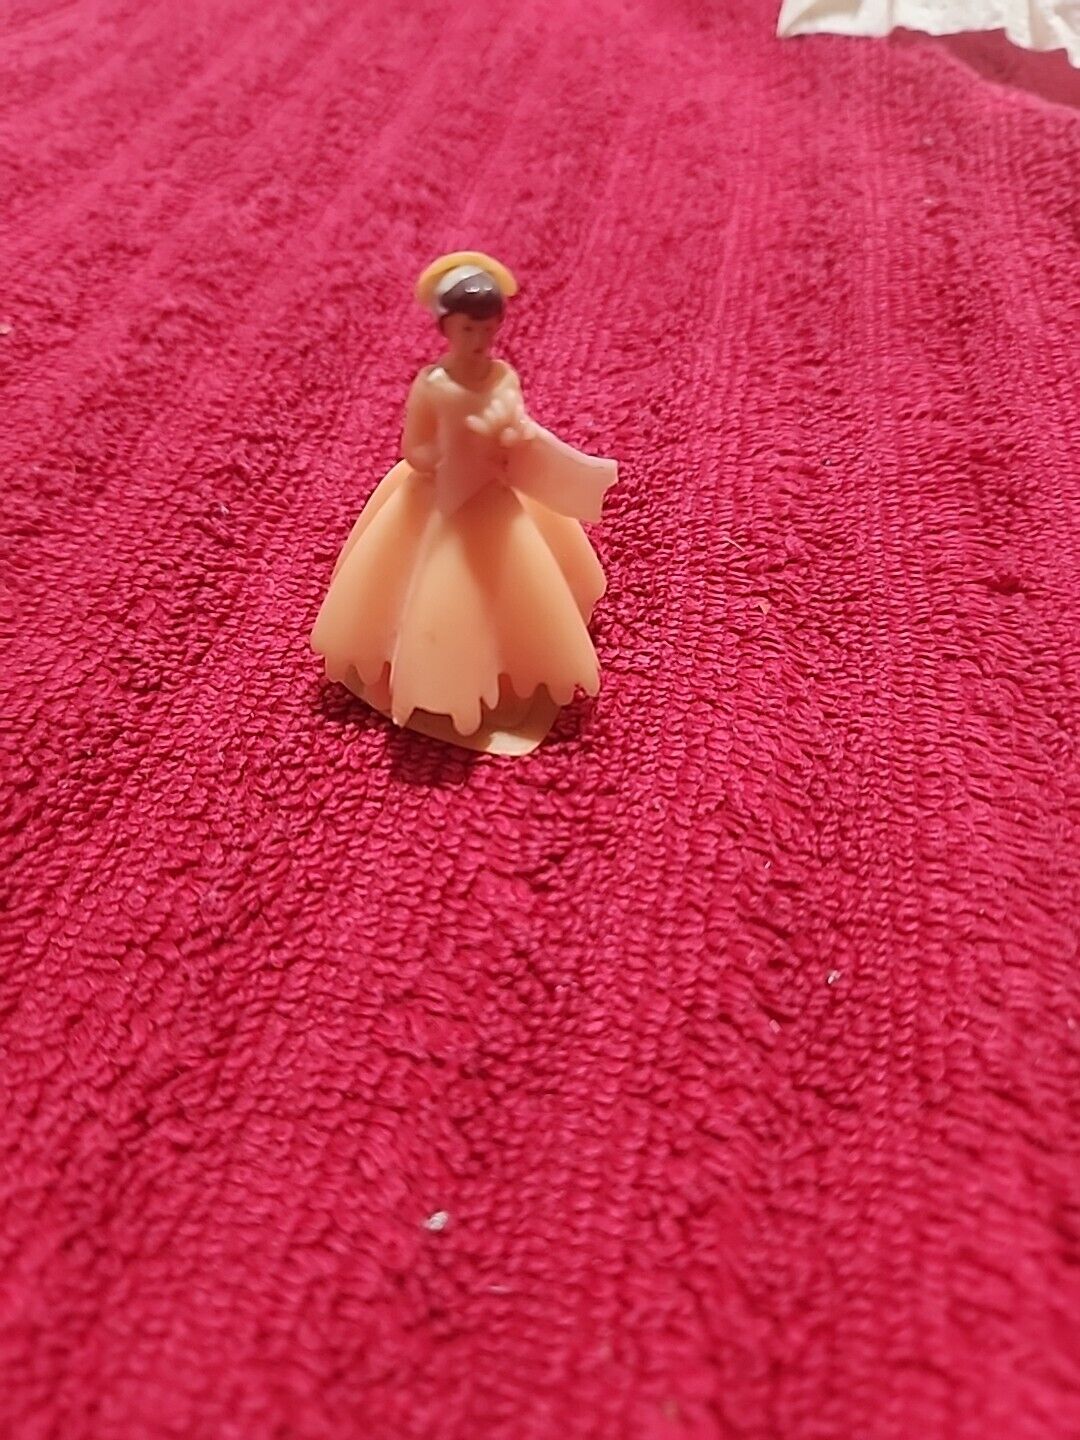 Small 2 Inch Tall Plastic Princess